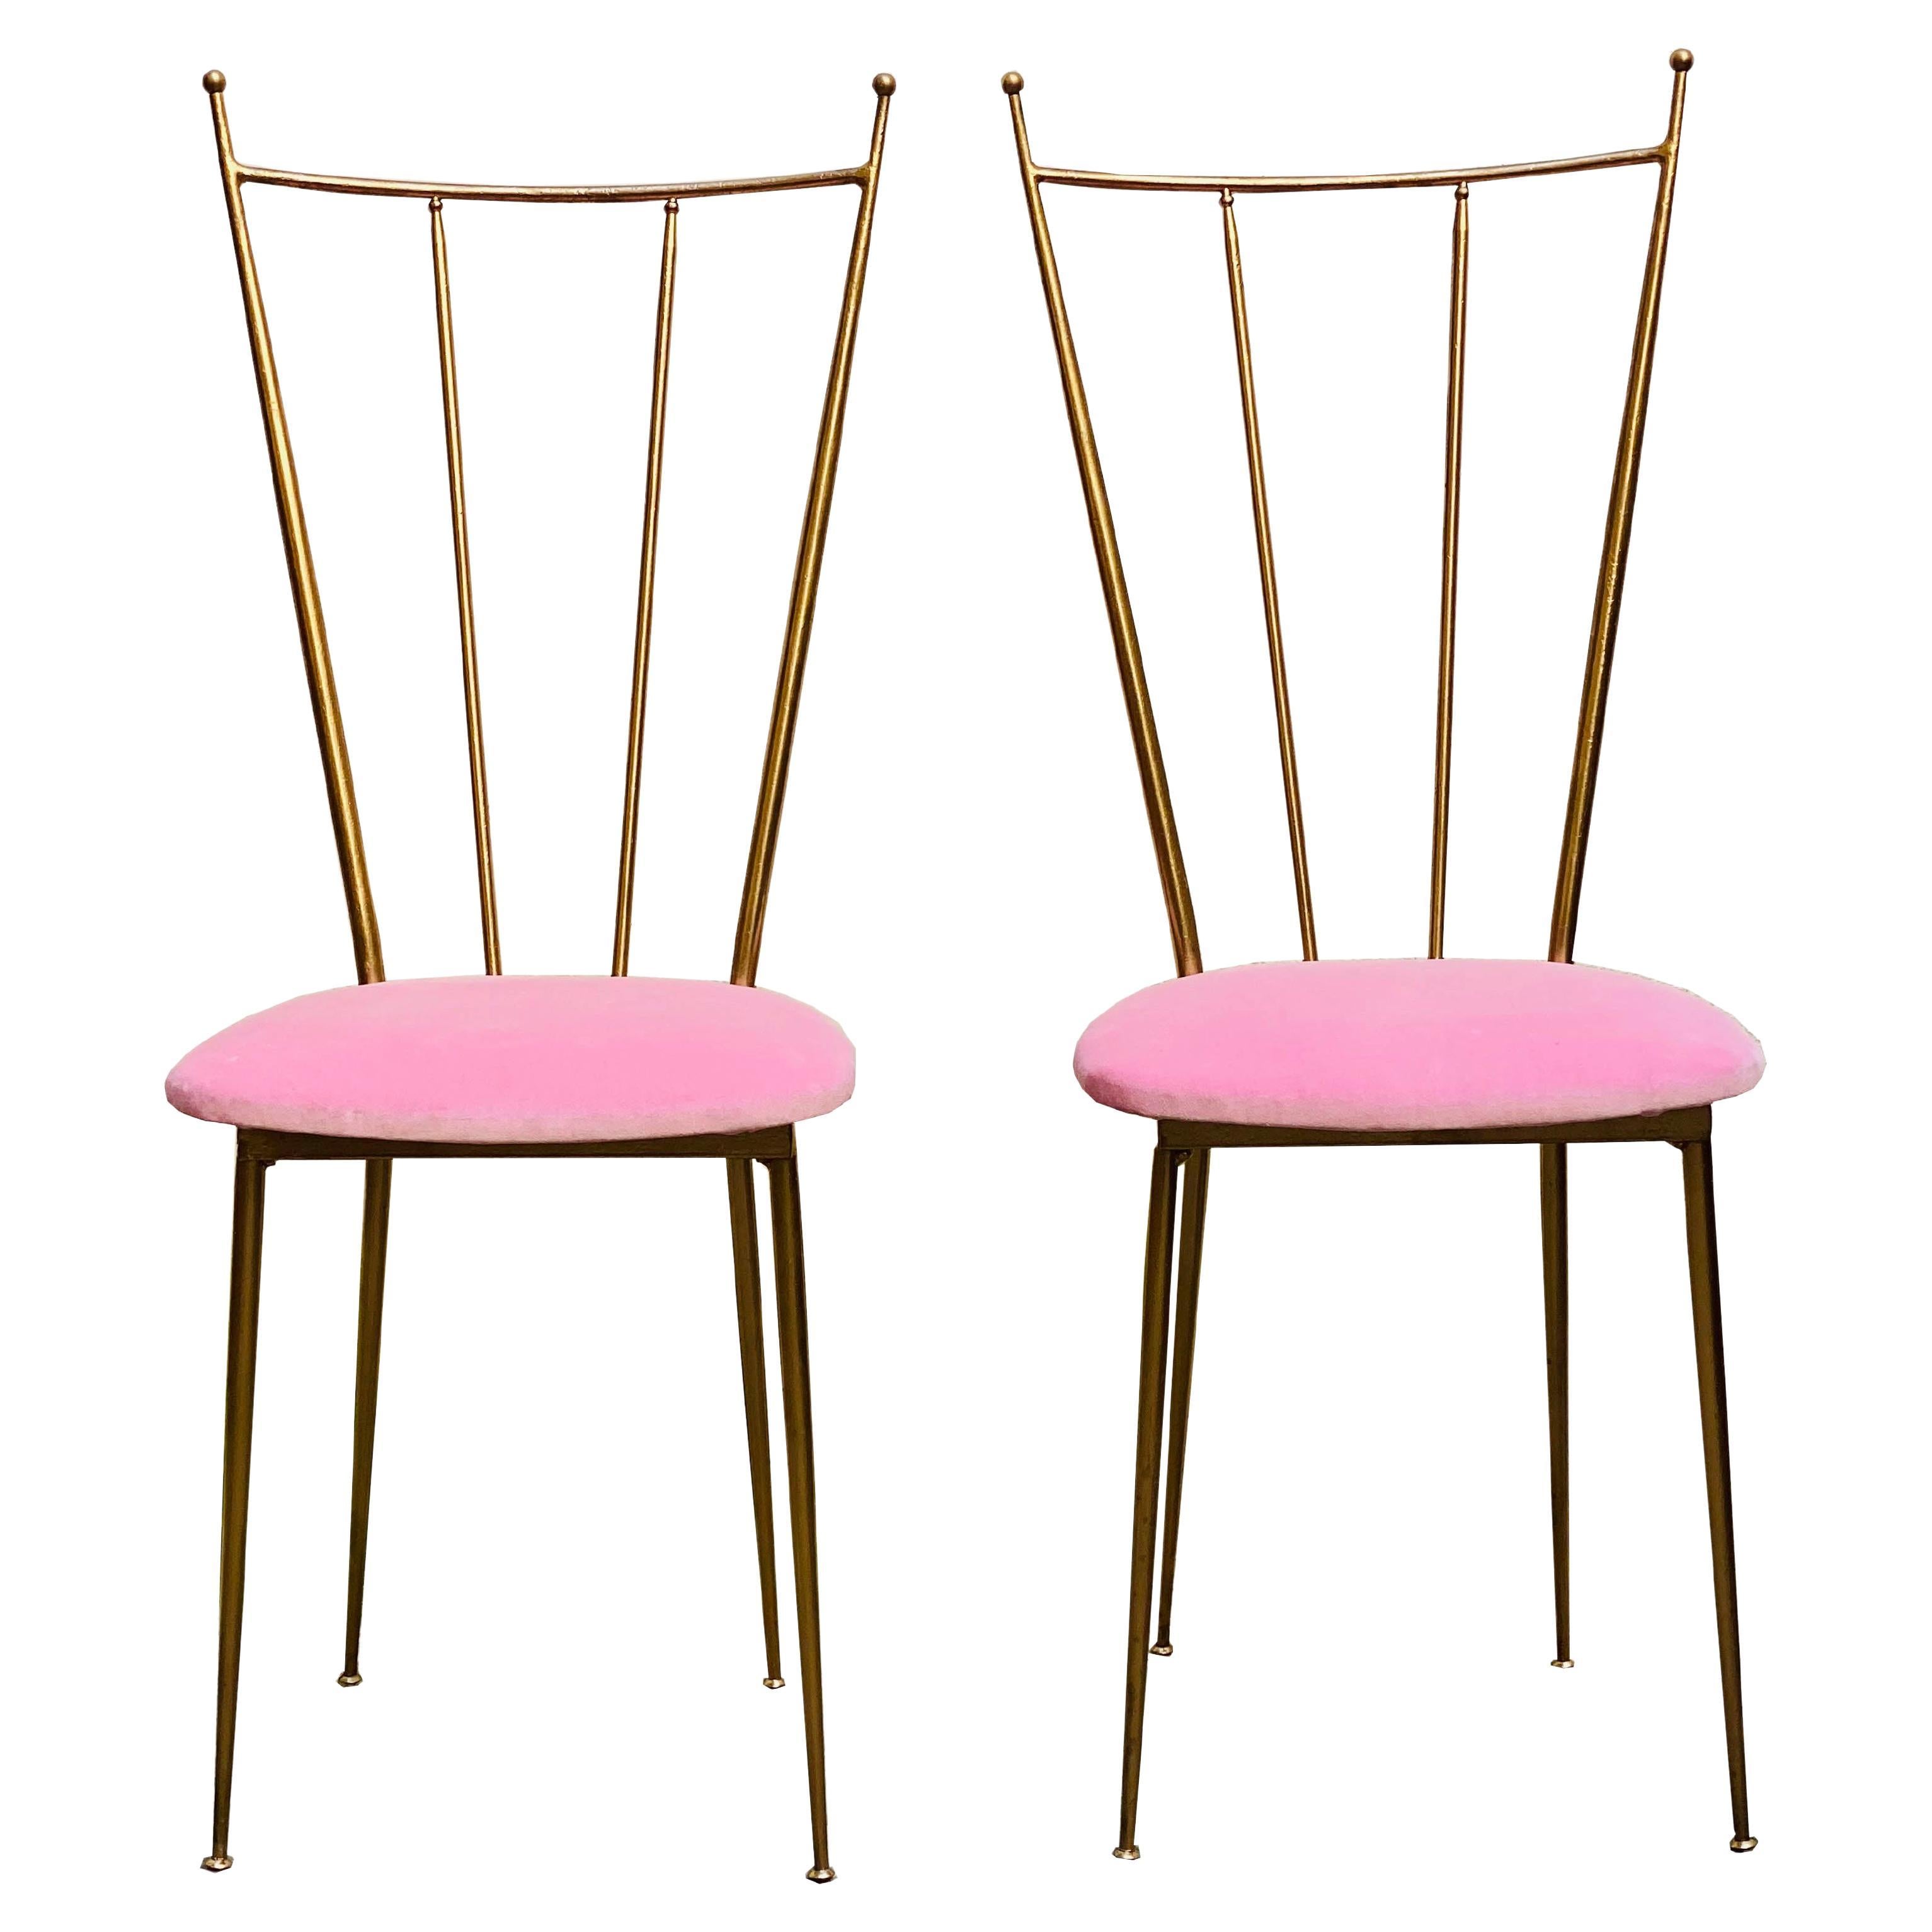 Pair of Brass Chiavarina Chairs, Italy 1960s